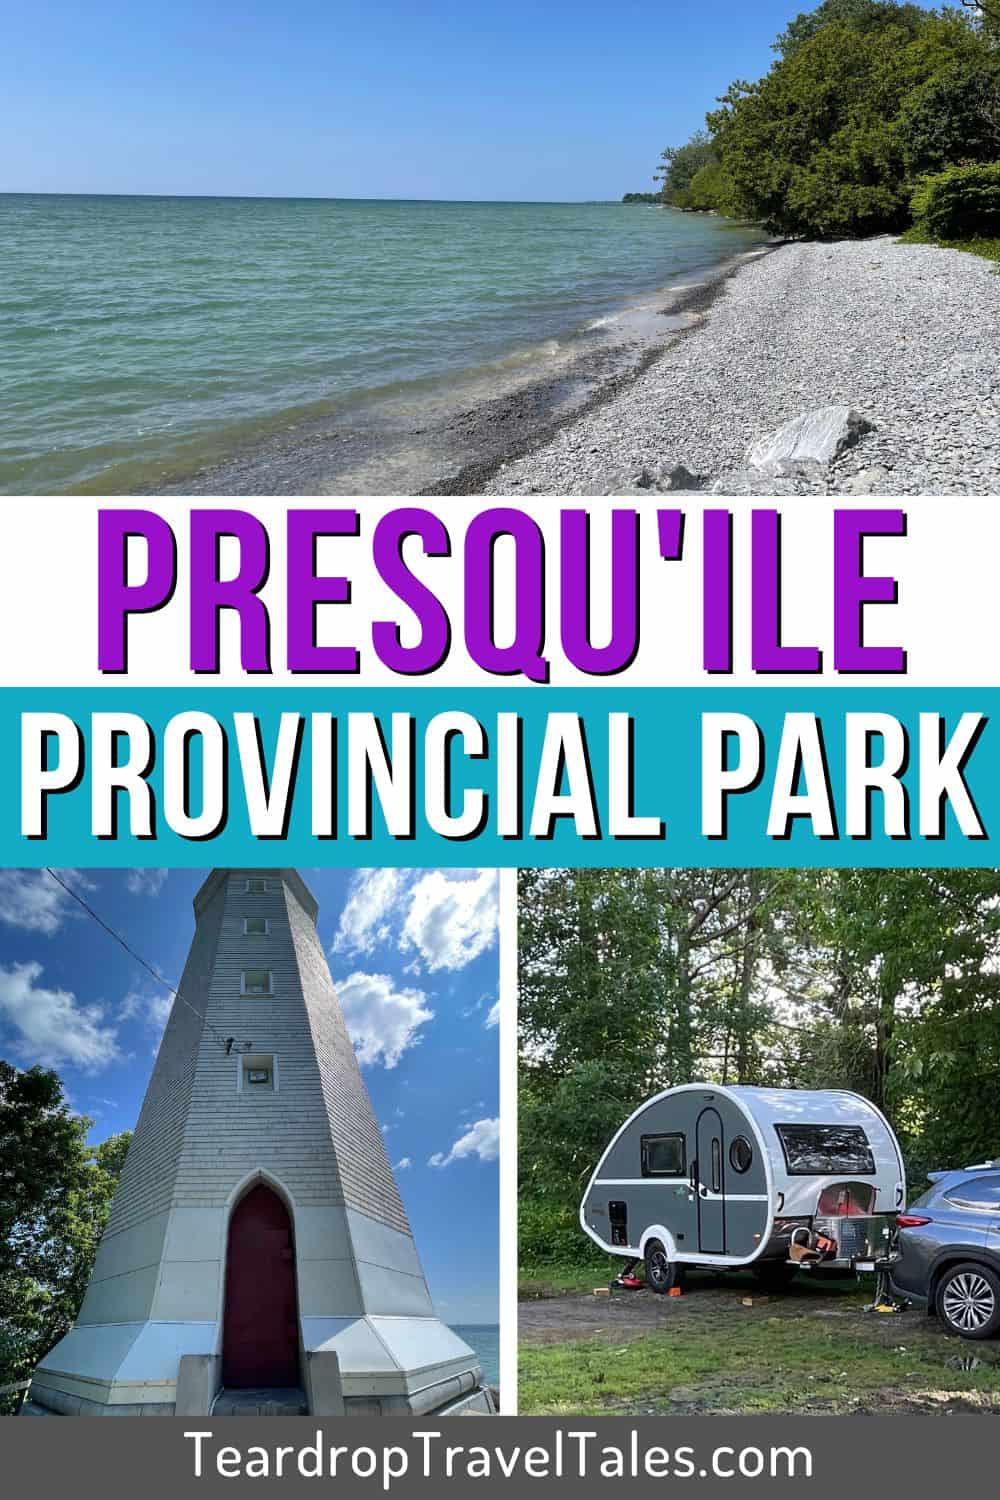 Presquile Provincial Park - Pinterest Pin 1